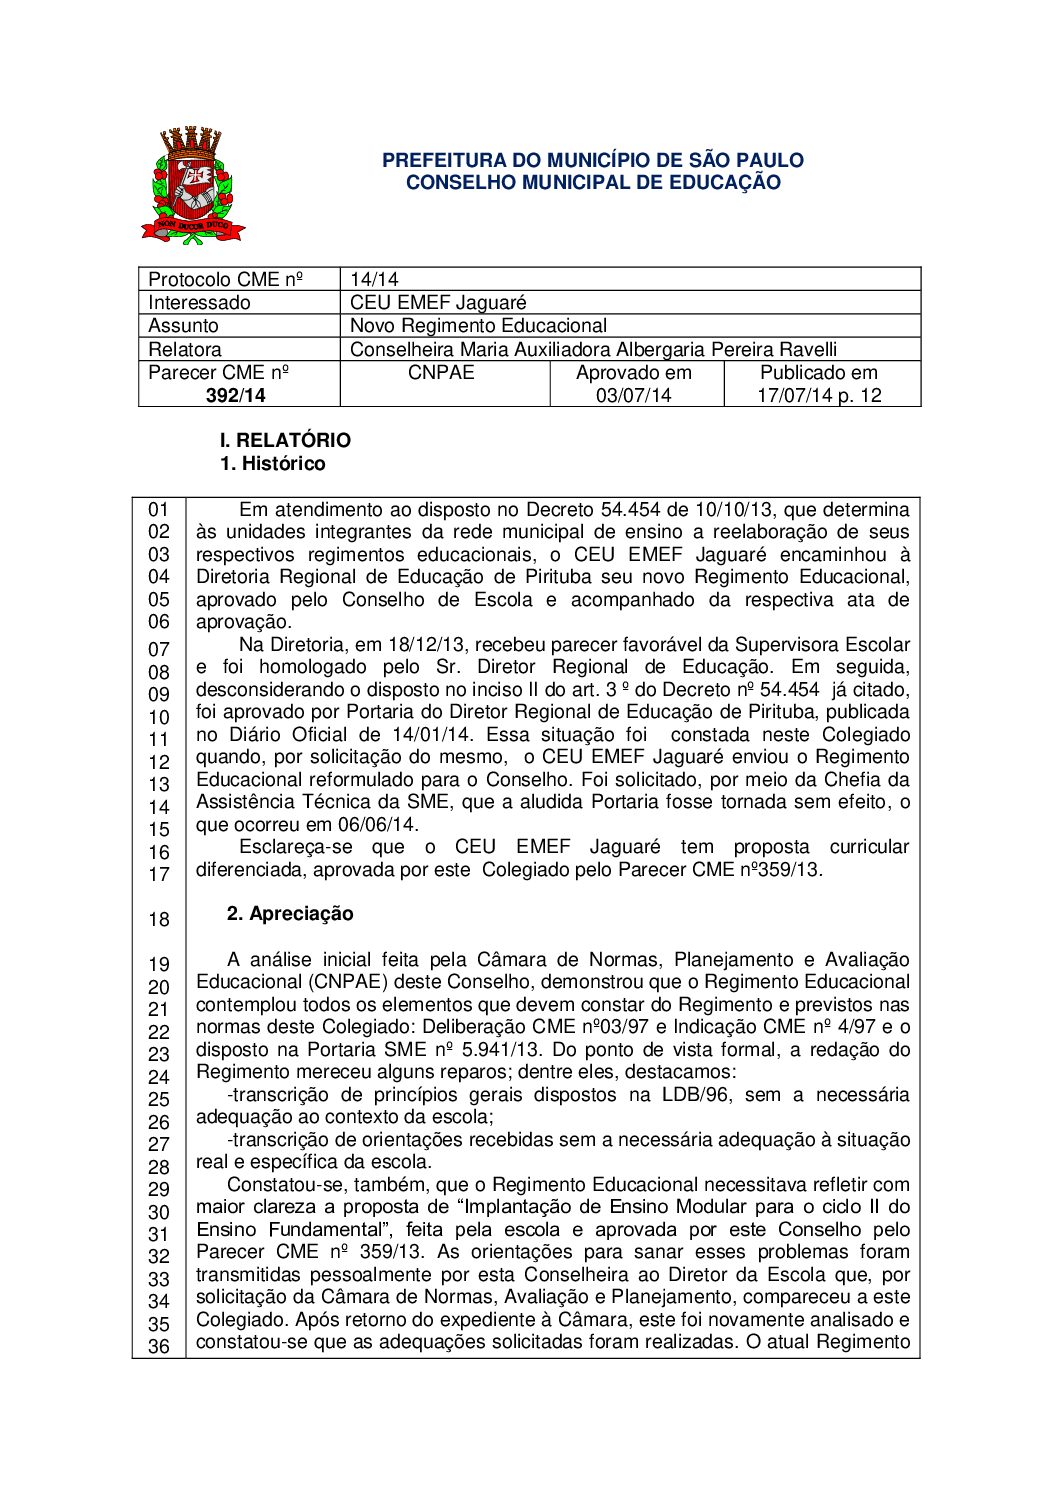 Parecer CME nº 392/2014 - CEU EMEF Jaguaré - Novo Regimento Educacional